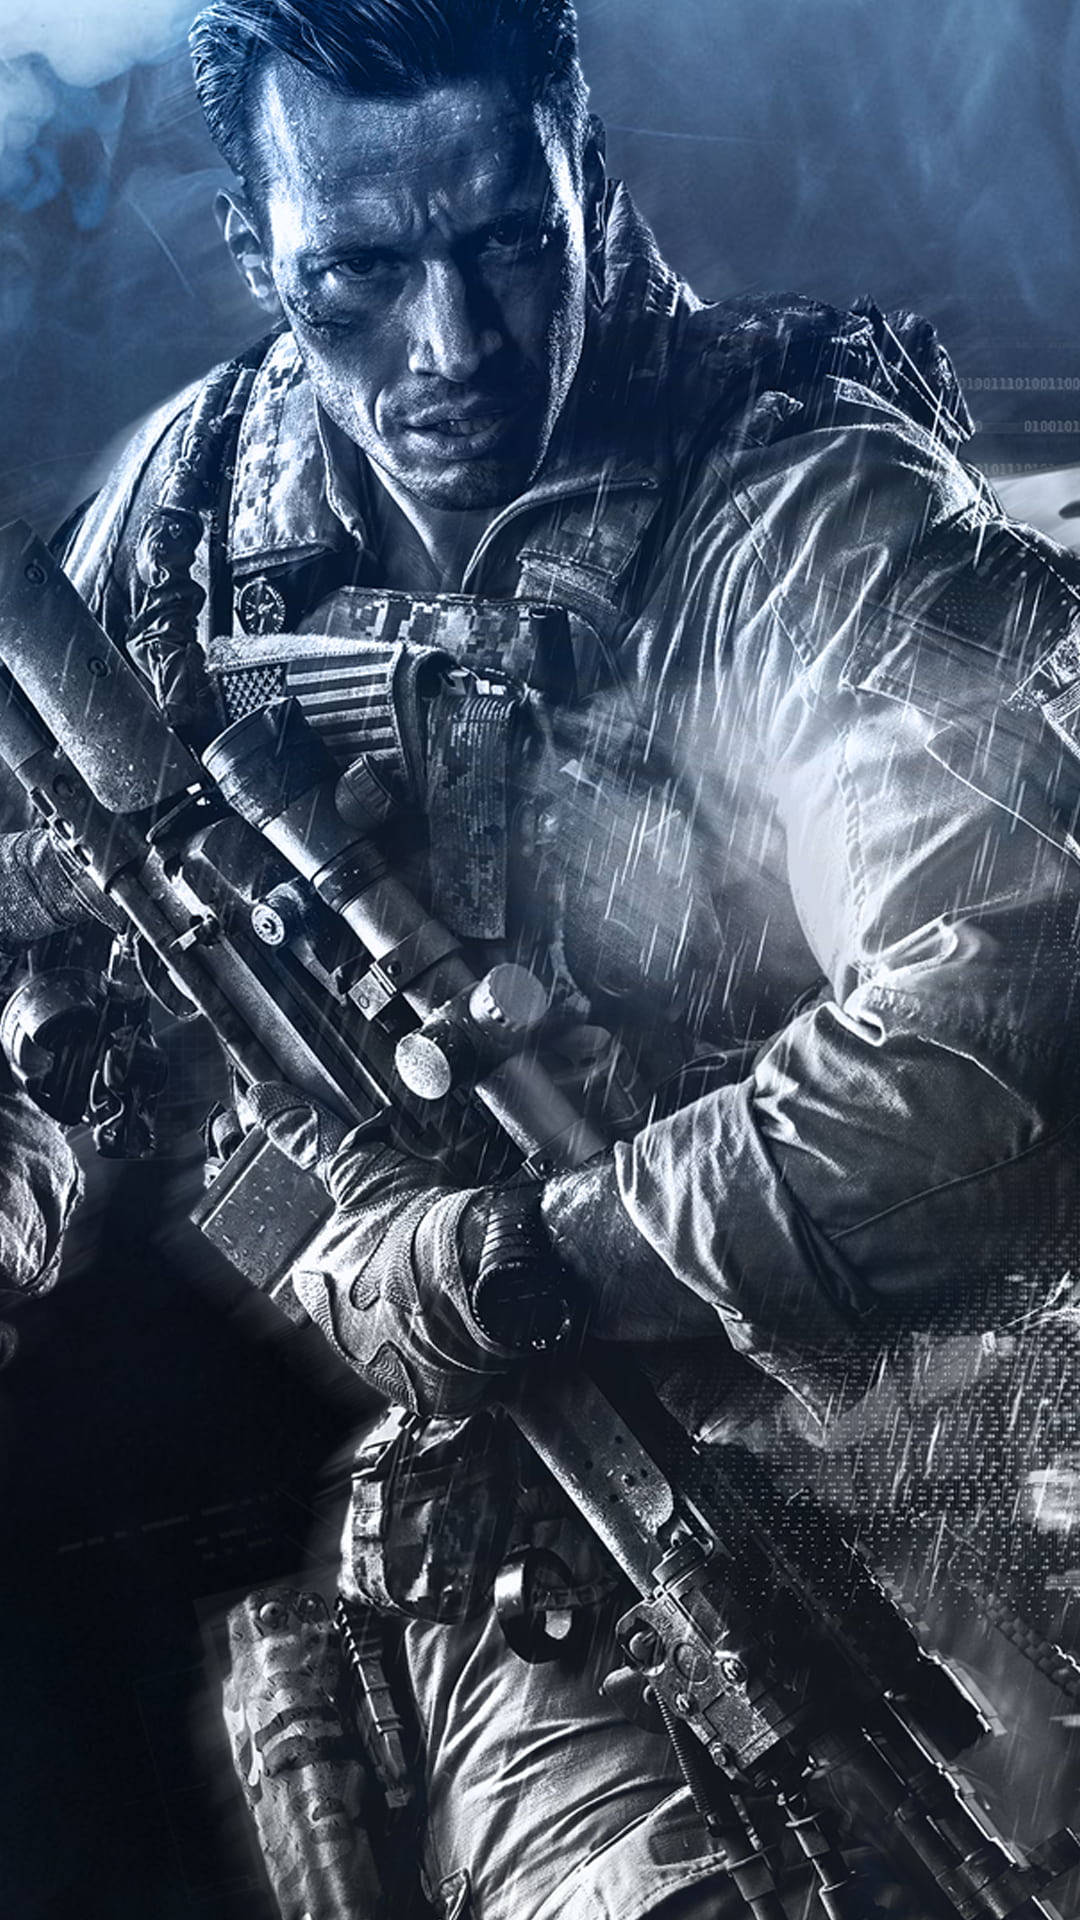 Wallpaperhuvudkaraktären I Battlefield 4 Som Telefon-bakgrundsbild: Wallpaper